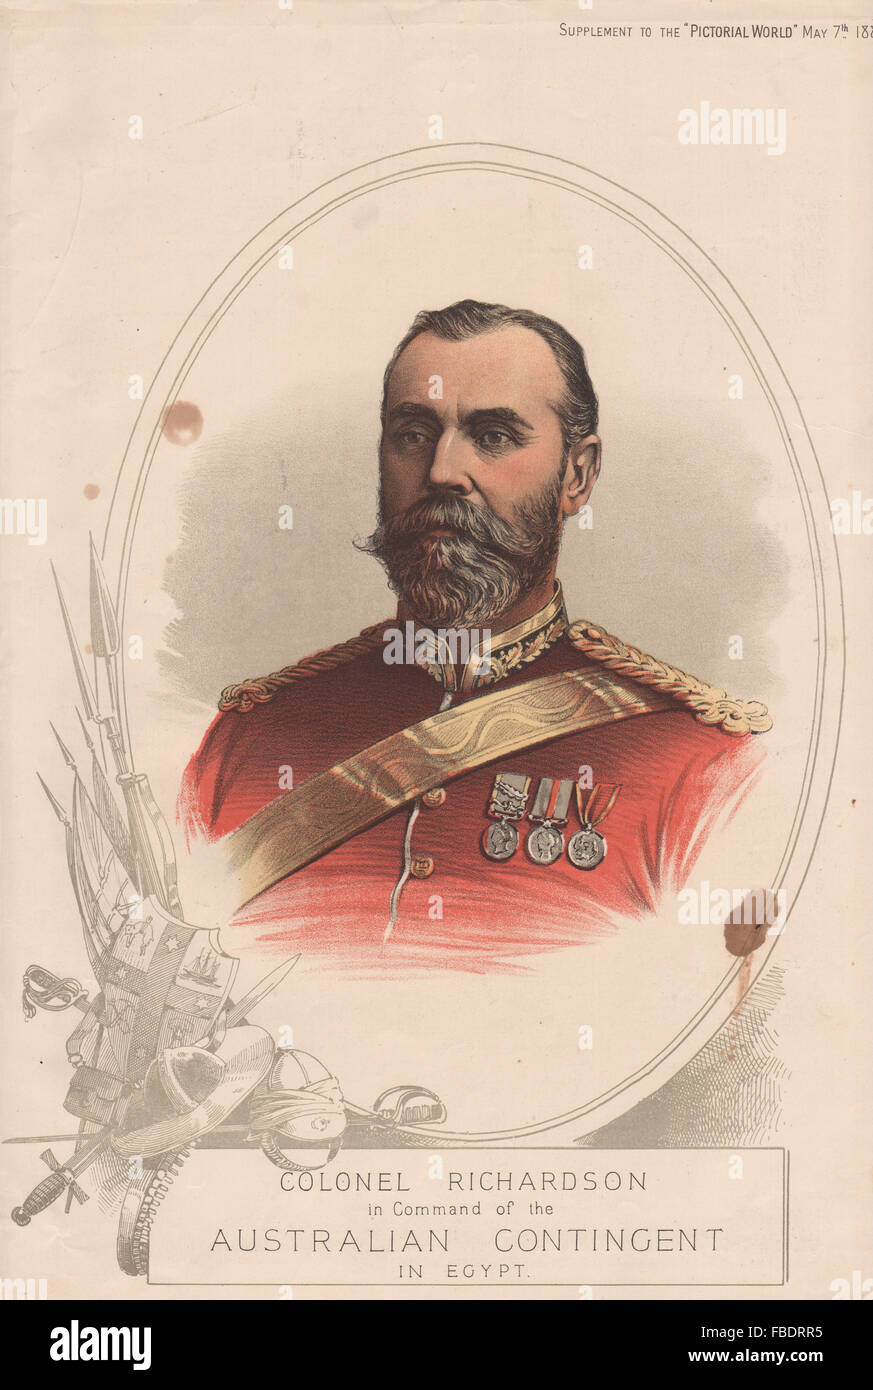 Le colonel Richardson dans le commandement de la contingent australien en Egypte, 1885 Banque D'Images